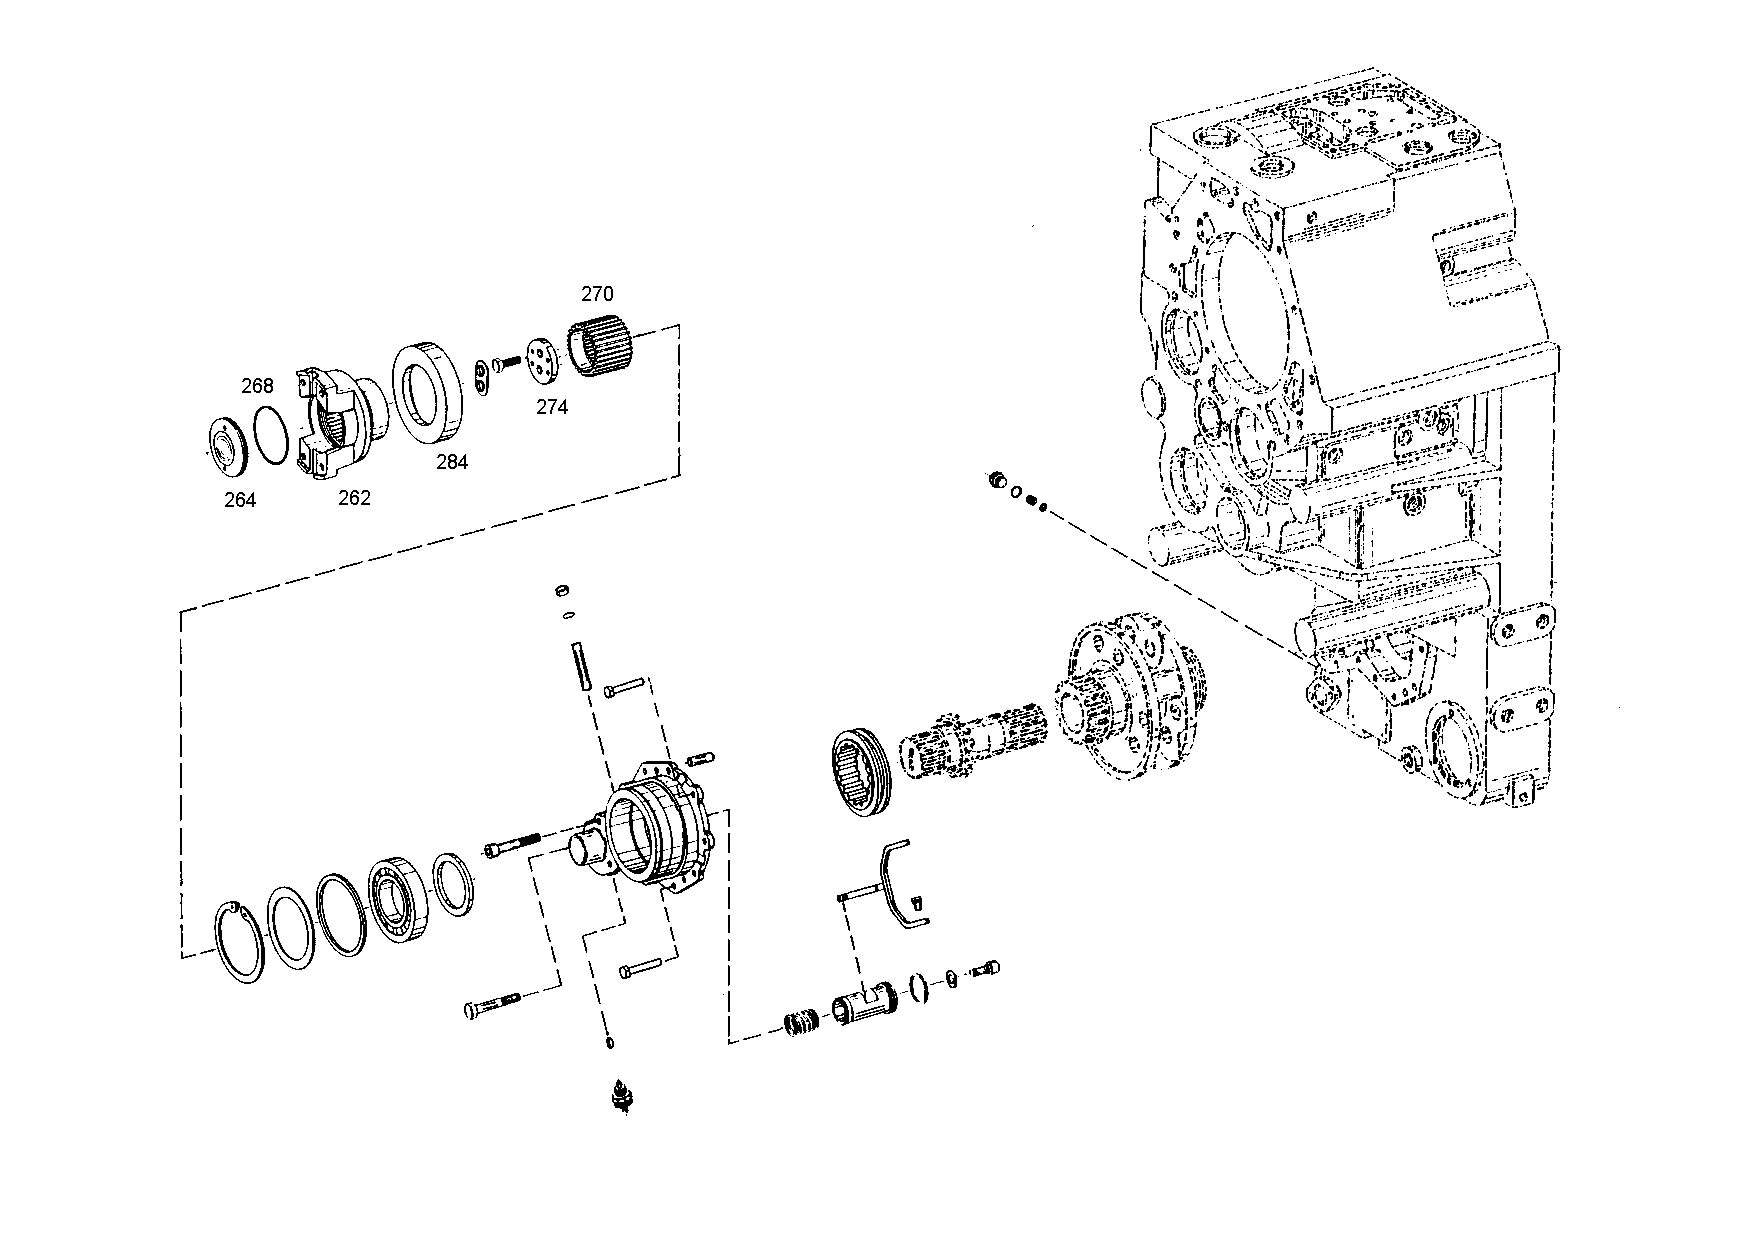 drawing for SCHOPF MASCHINENBAU GMBH 115221 - O-RING (figure 4)